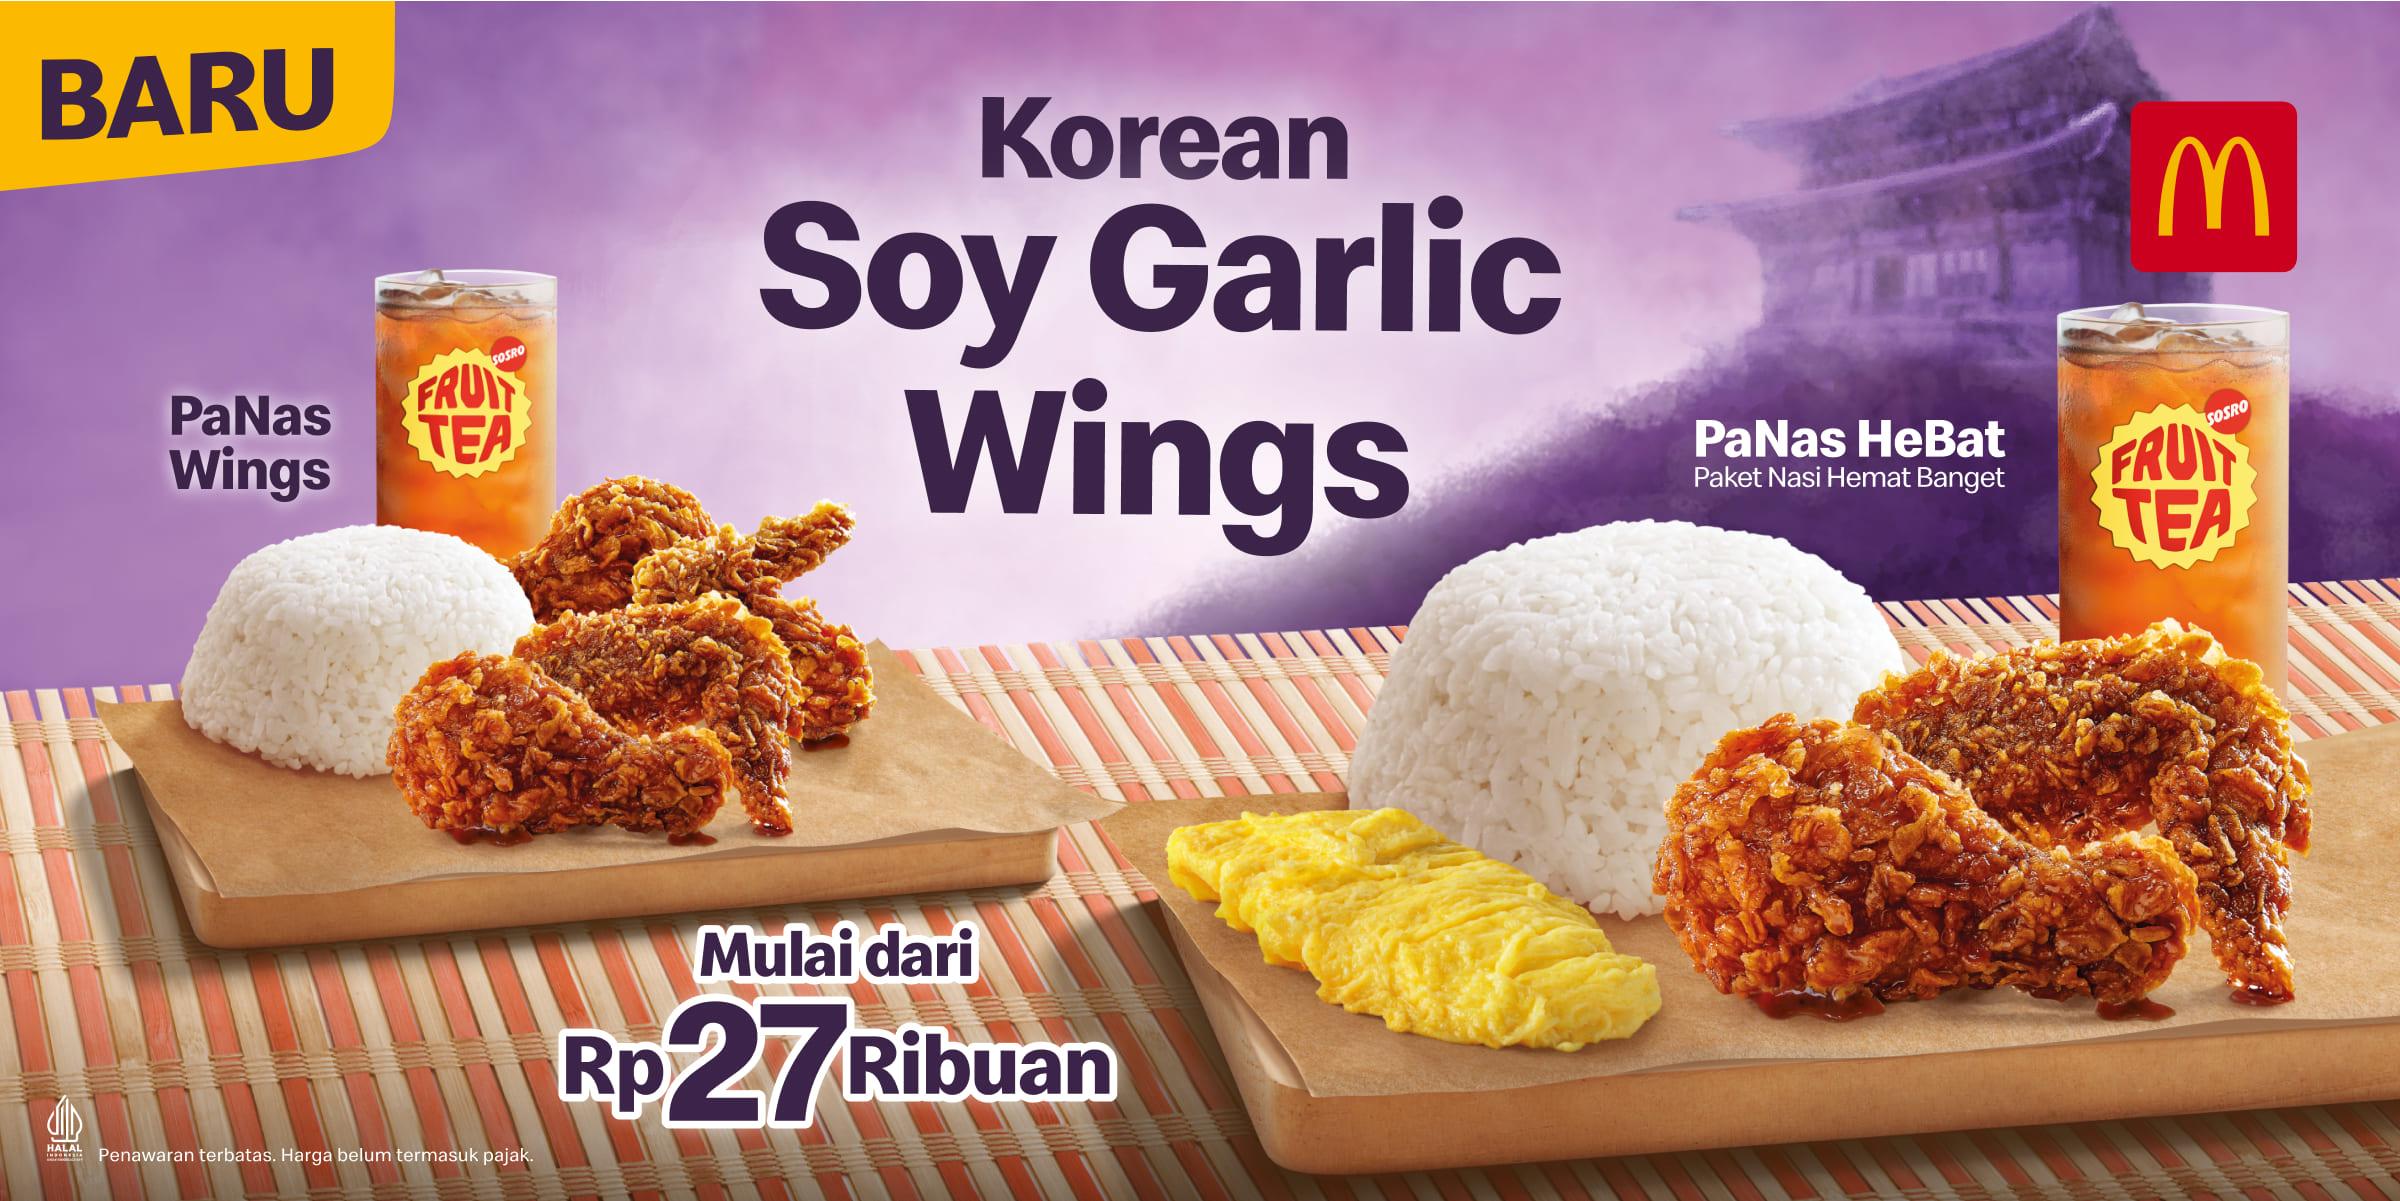 Korean Soy Garlic Wings